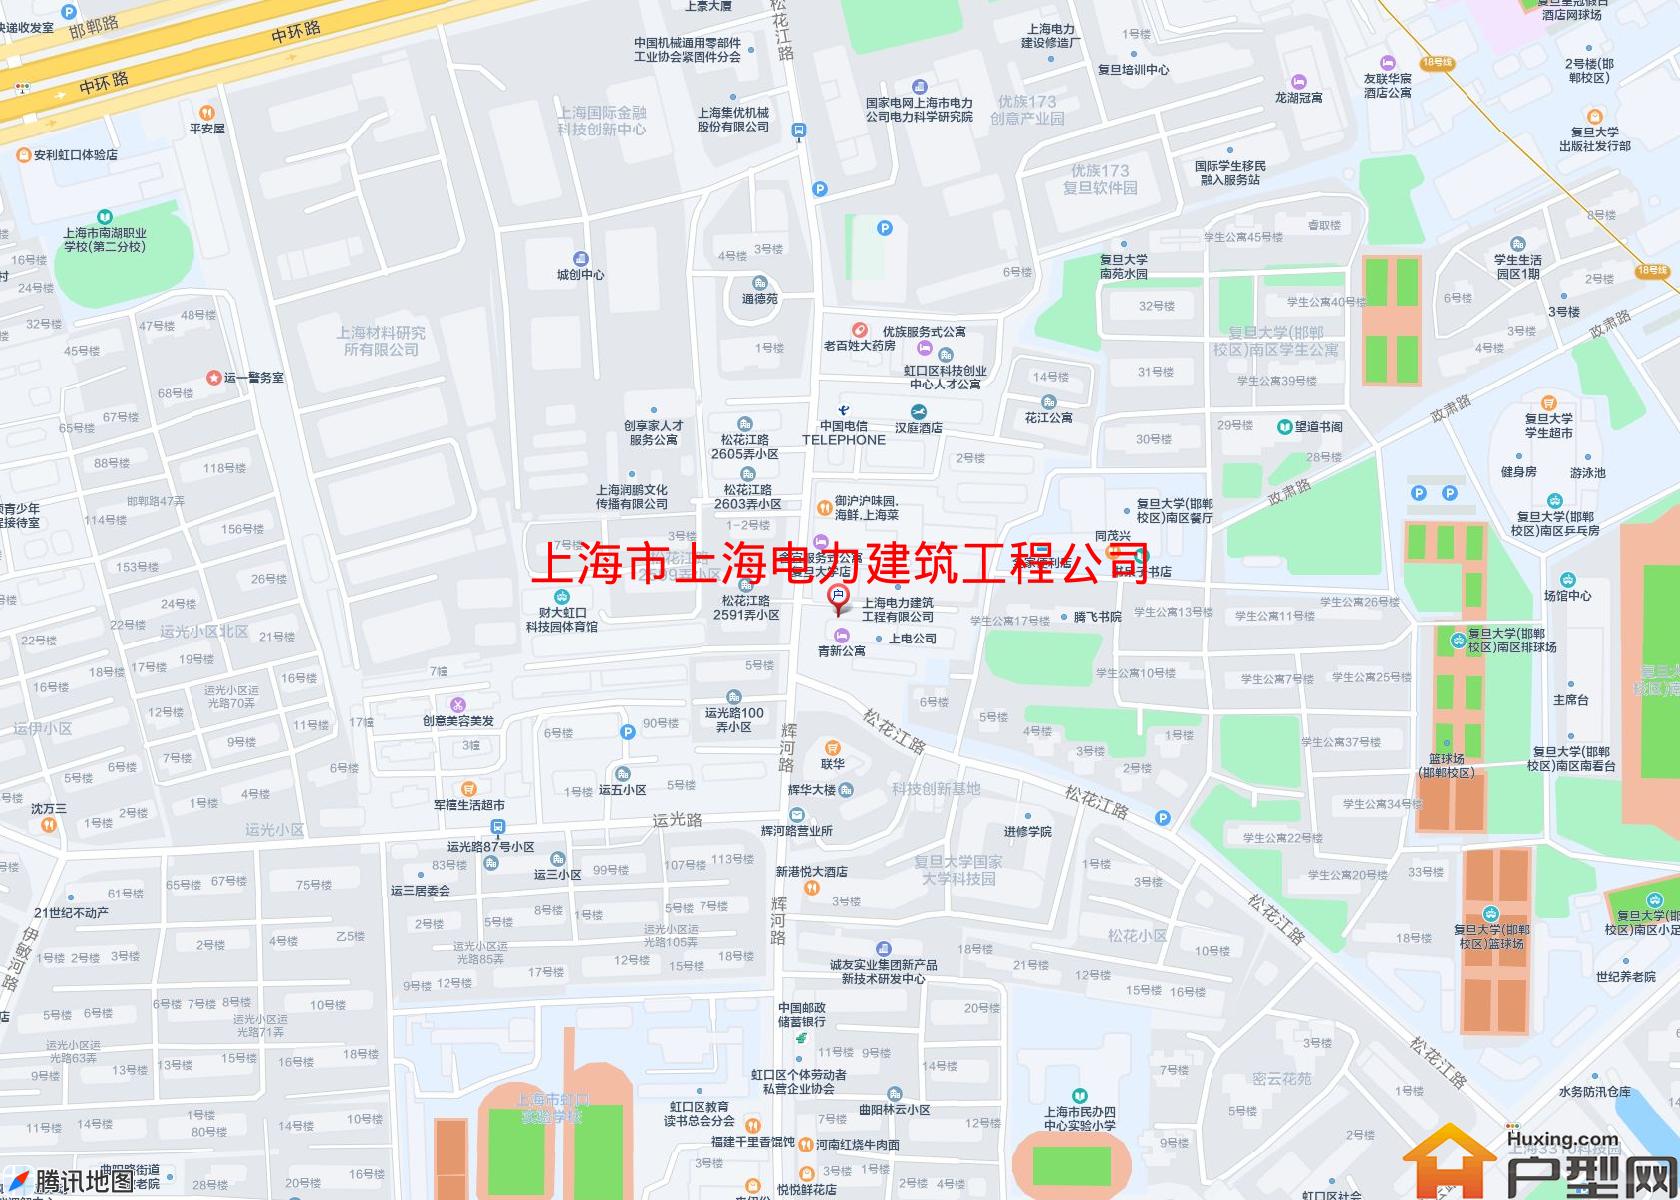 上海电力建筑工程公司大楼小区 - 户型网